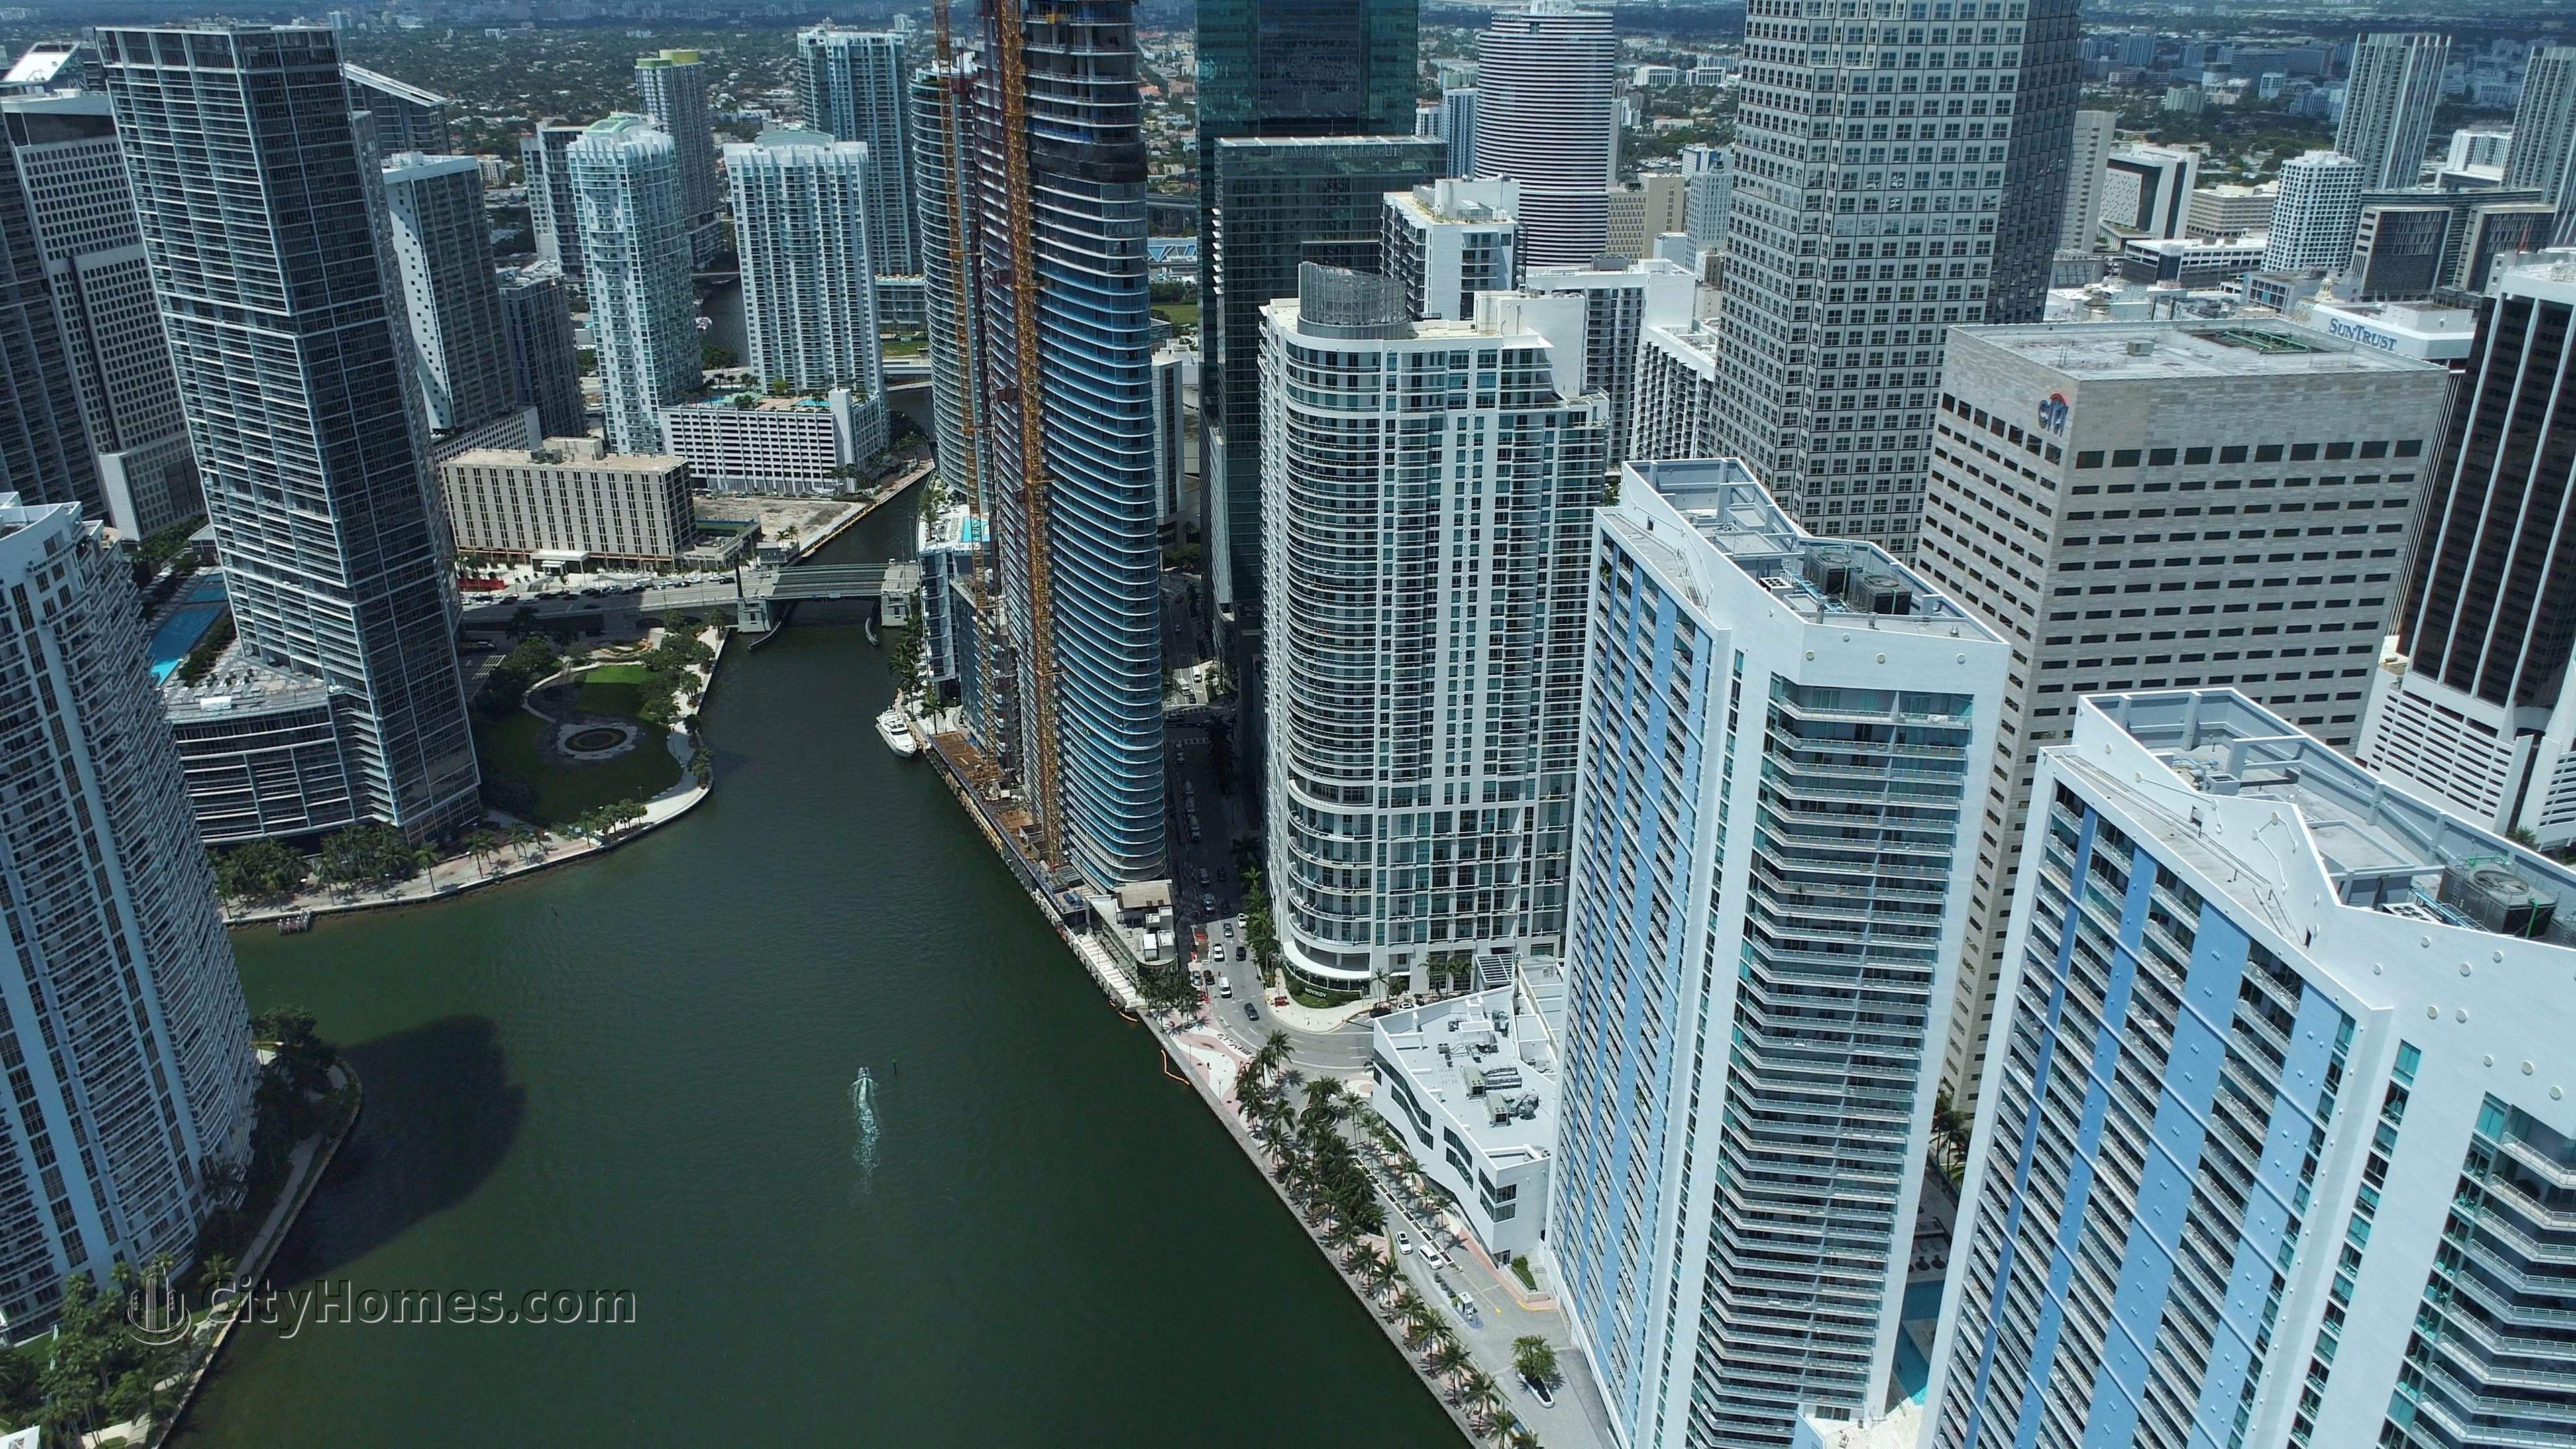 5. One Miami edificio a 325 And 335 S Biscayne Blvd, Miami, FL 33131